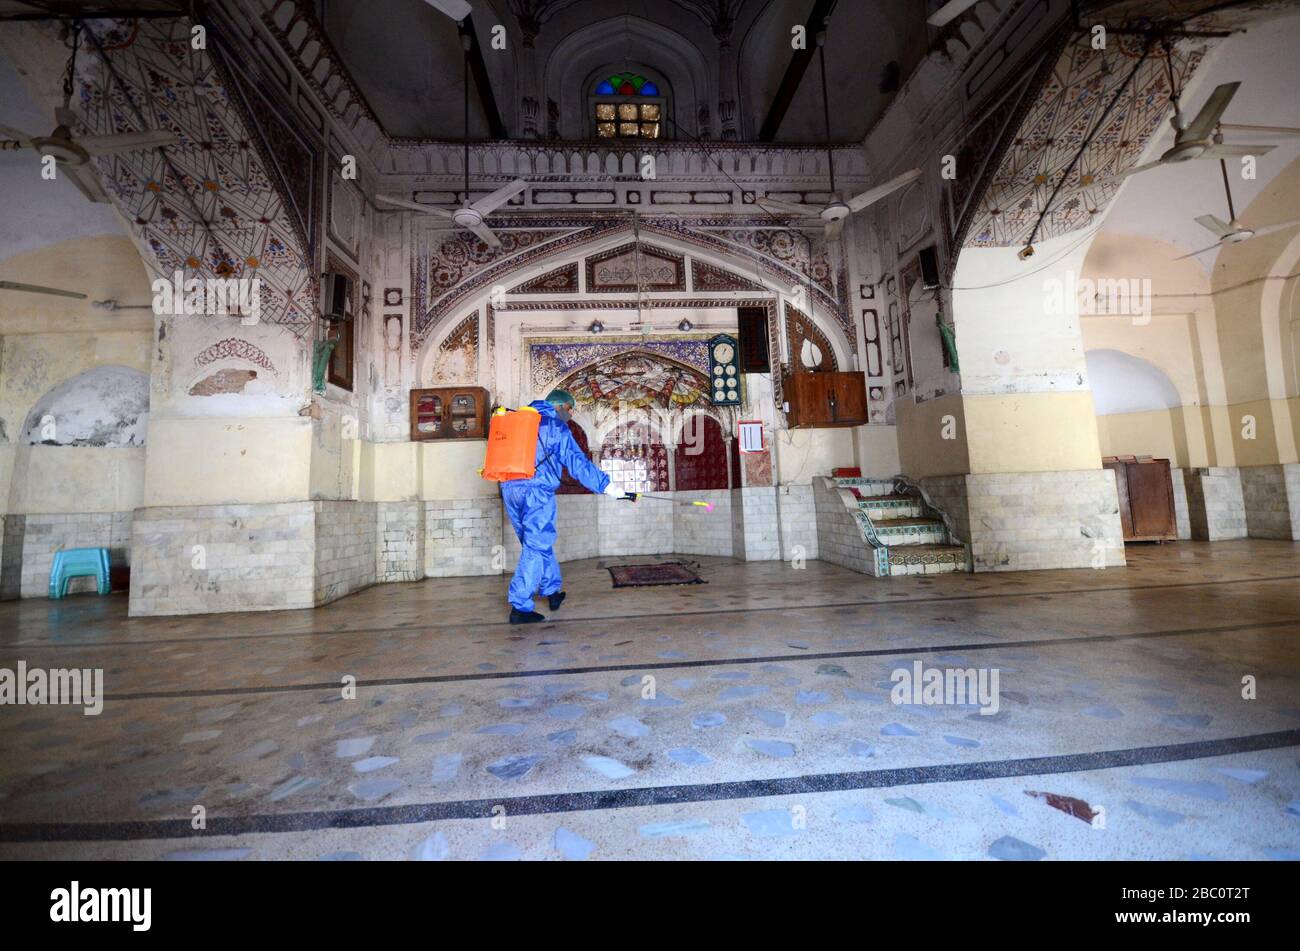 Mitglieder des Teams der Stadtgesellschaft sprühen Desinfektionsmittel, um die Umgebung der Dilawar Khan Moschee und Straße nach einem Ausbruch des Corona-Virus in der Stadt Peschawar, Pakistan am 2. April 2020 zu sanieren. (Foto von Hussain Ali/Pacific Press/Sipa USA) Stockfoto